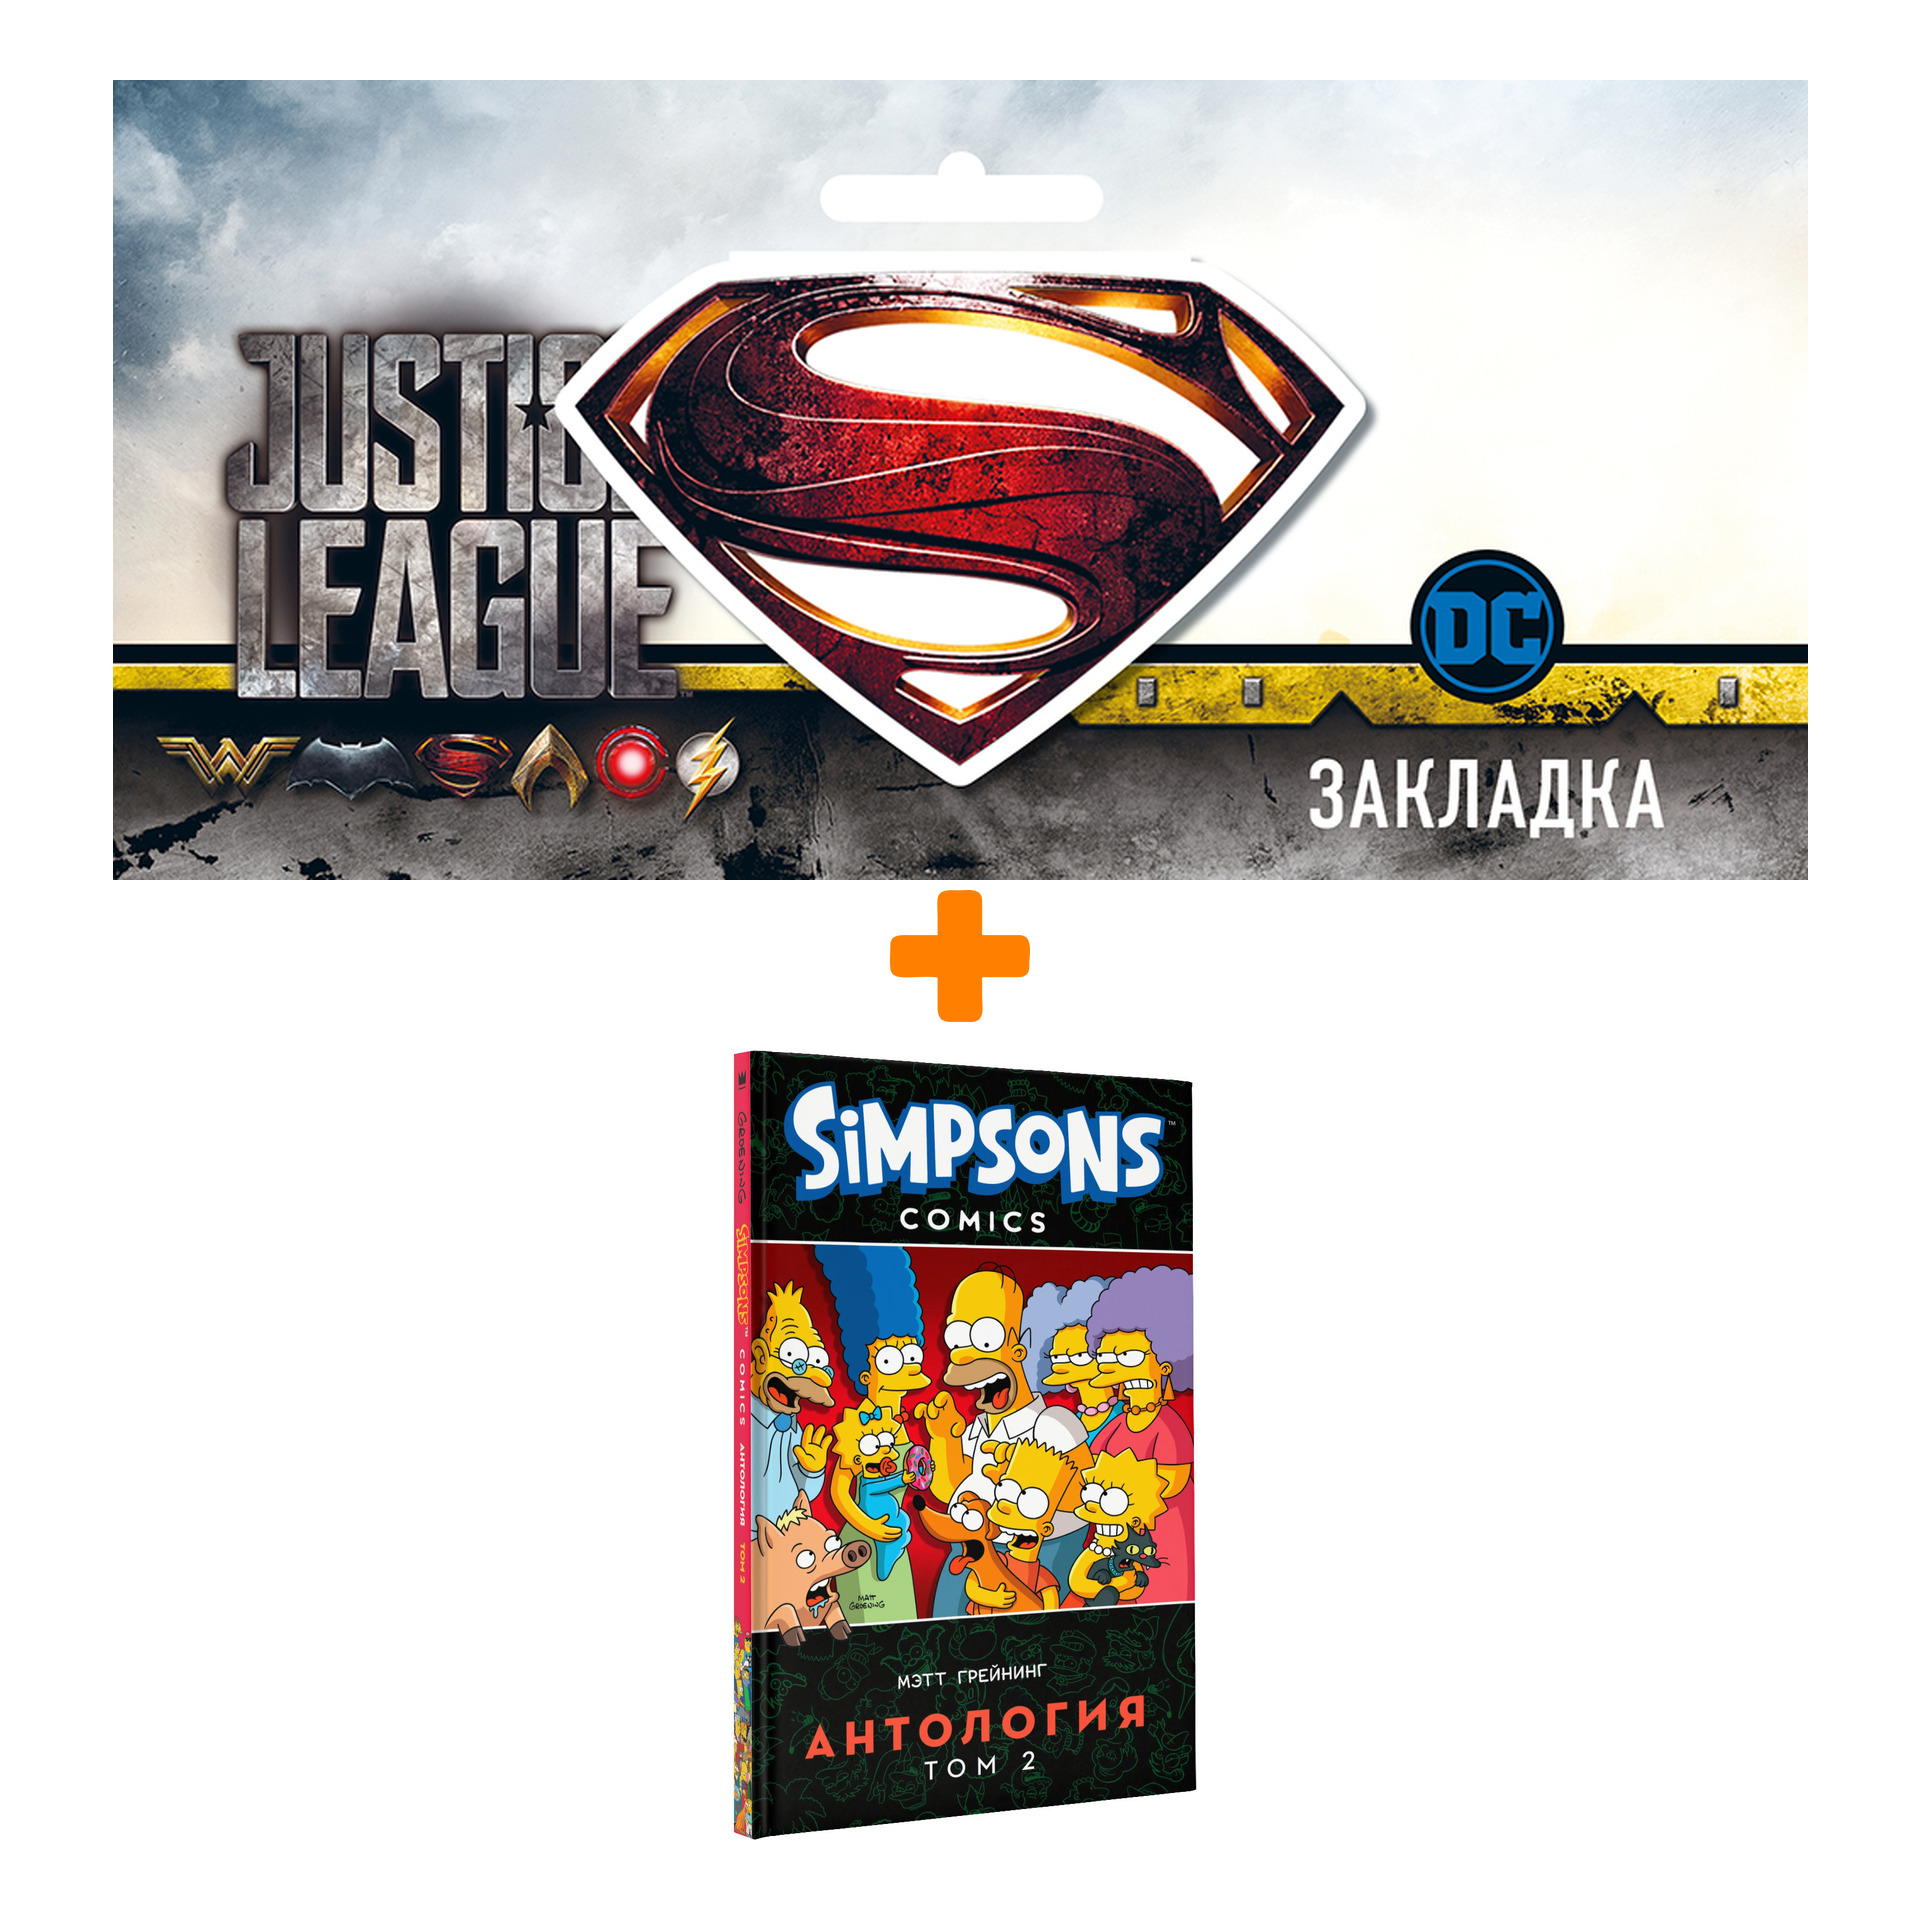 Набор Комикс Simpsons Антология Том 2 + Закладка DC Justice League Superman магнитная